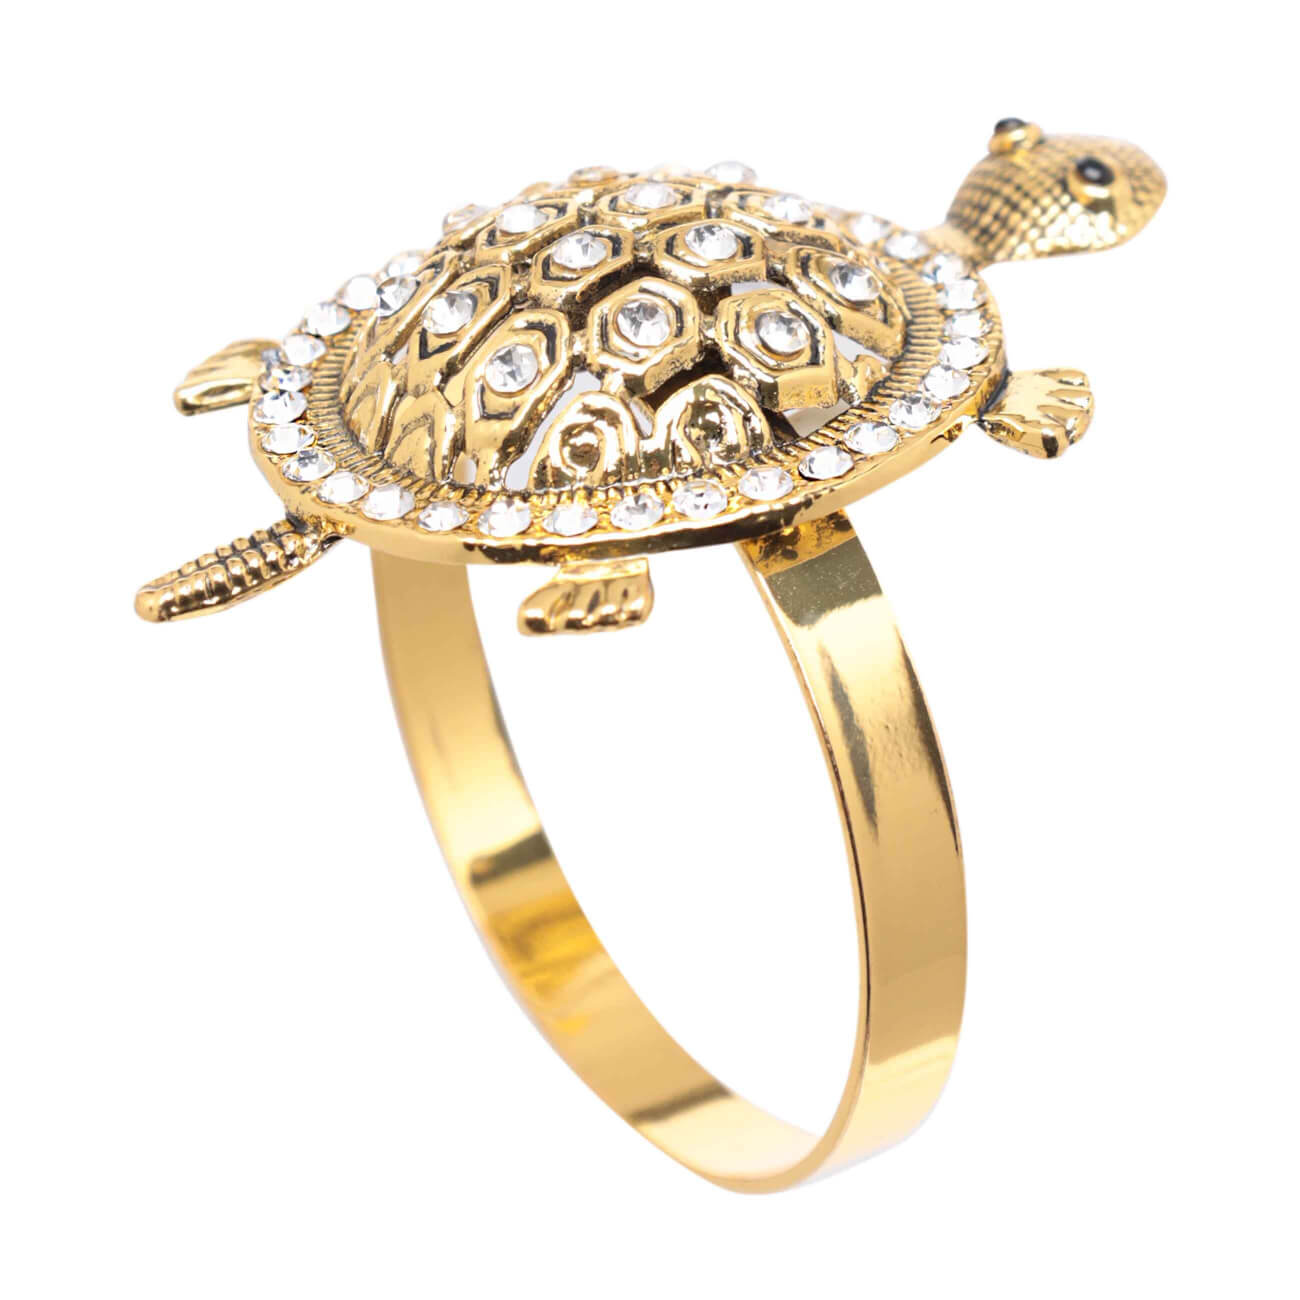 Кольцо для салфеток, 5 см, металл, золотистое, Черепаха, Paradise island кольцо для салфеток 6 см металл золотистое ветка с листьями print